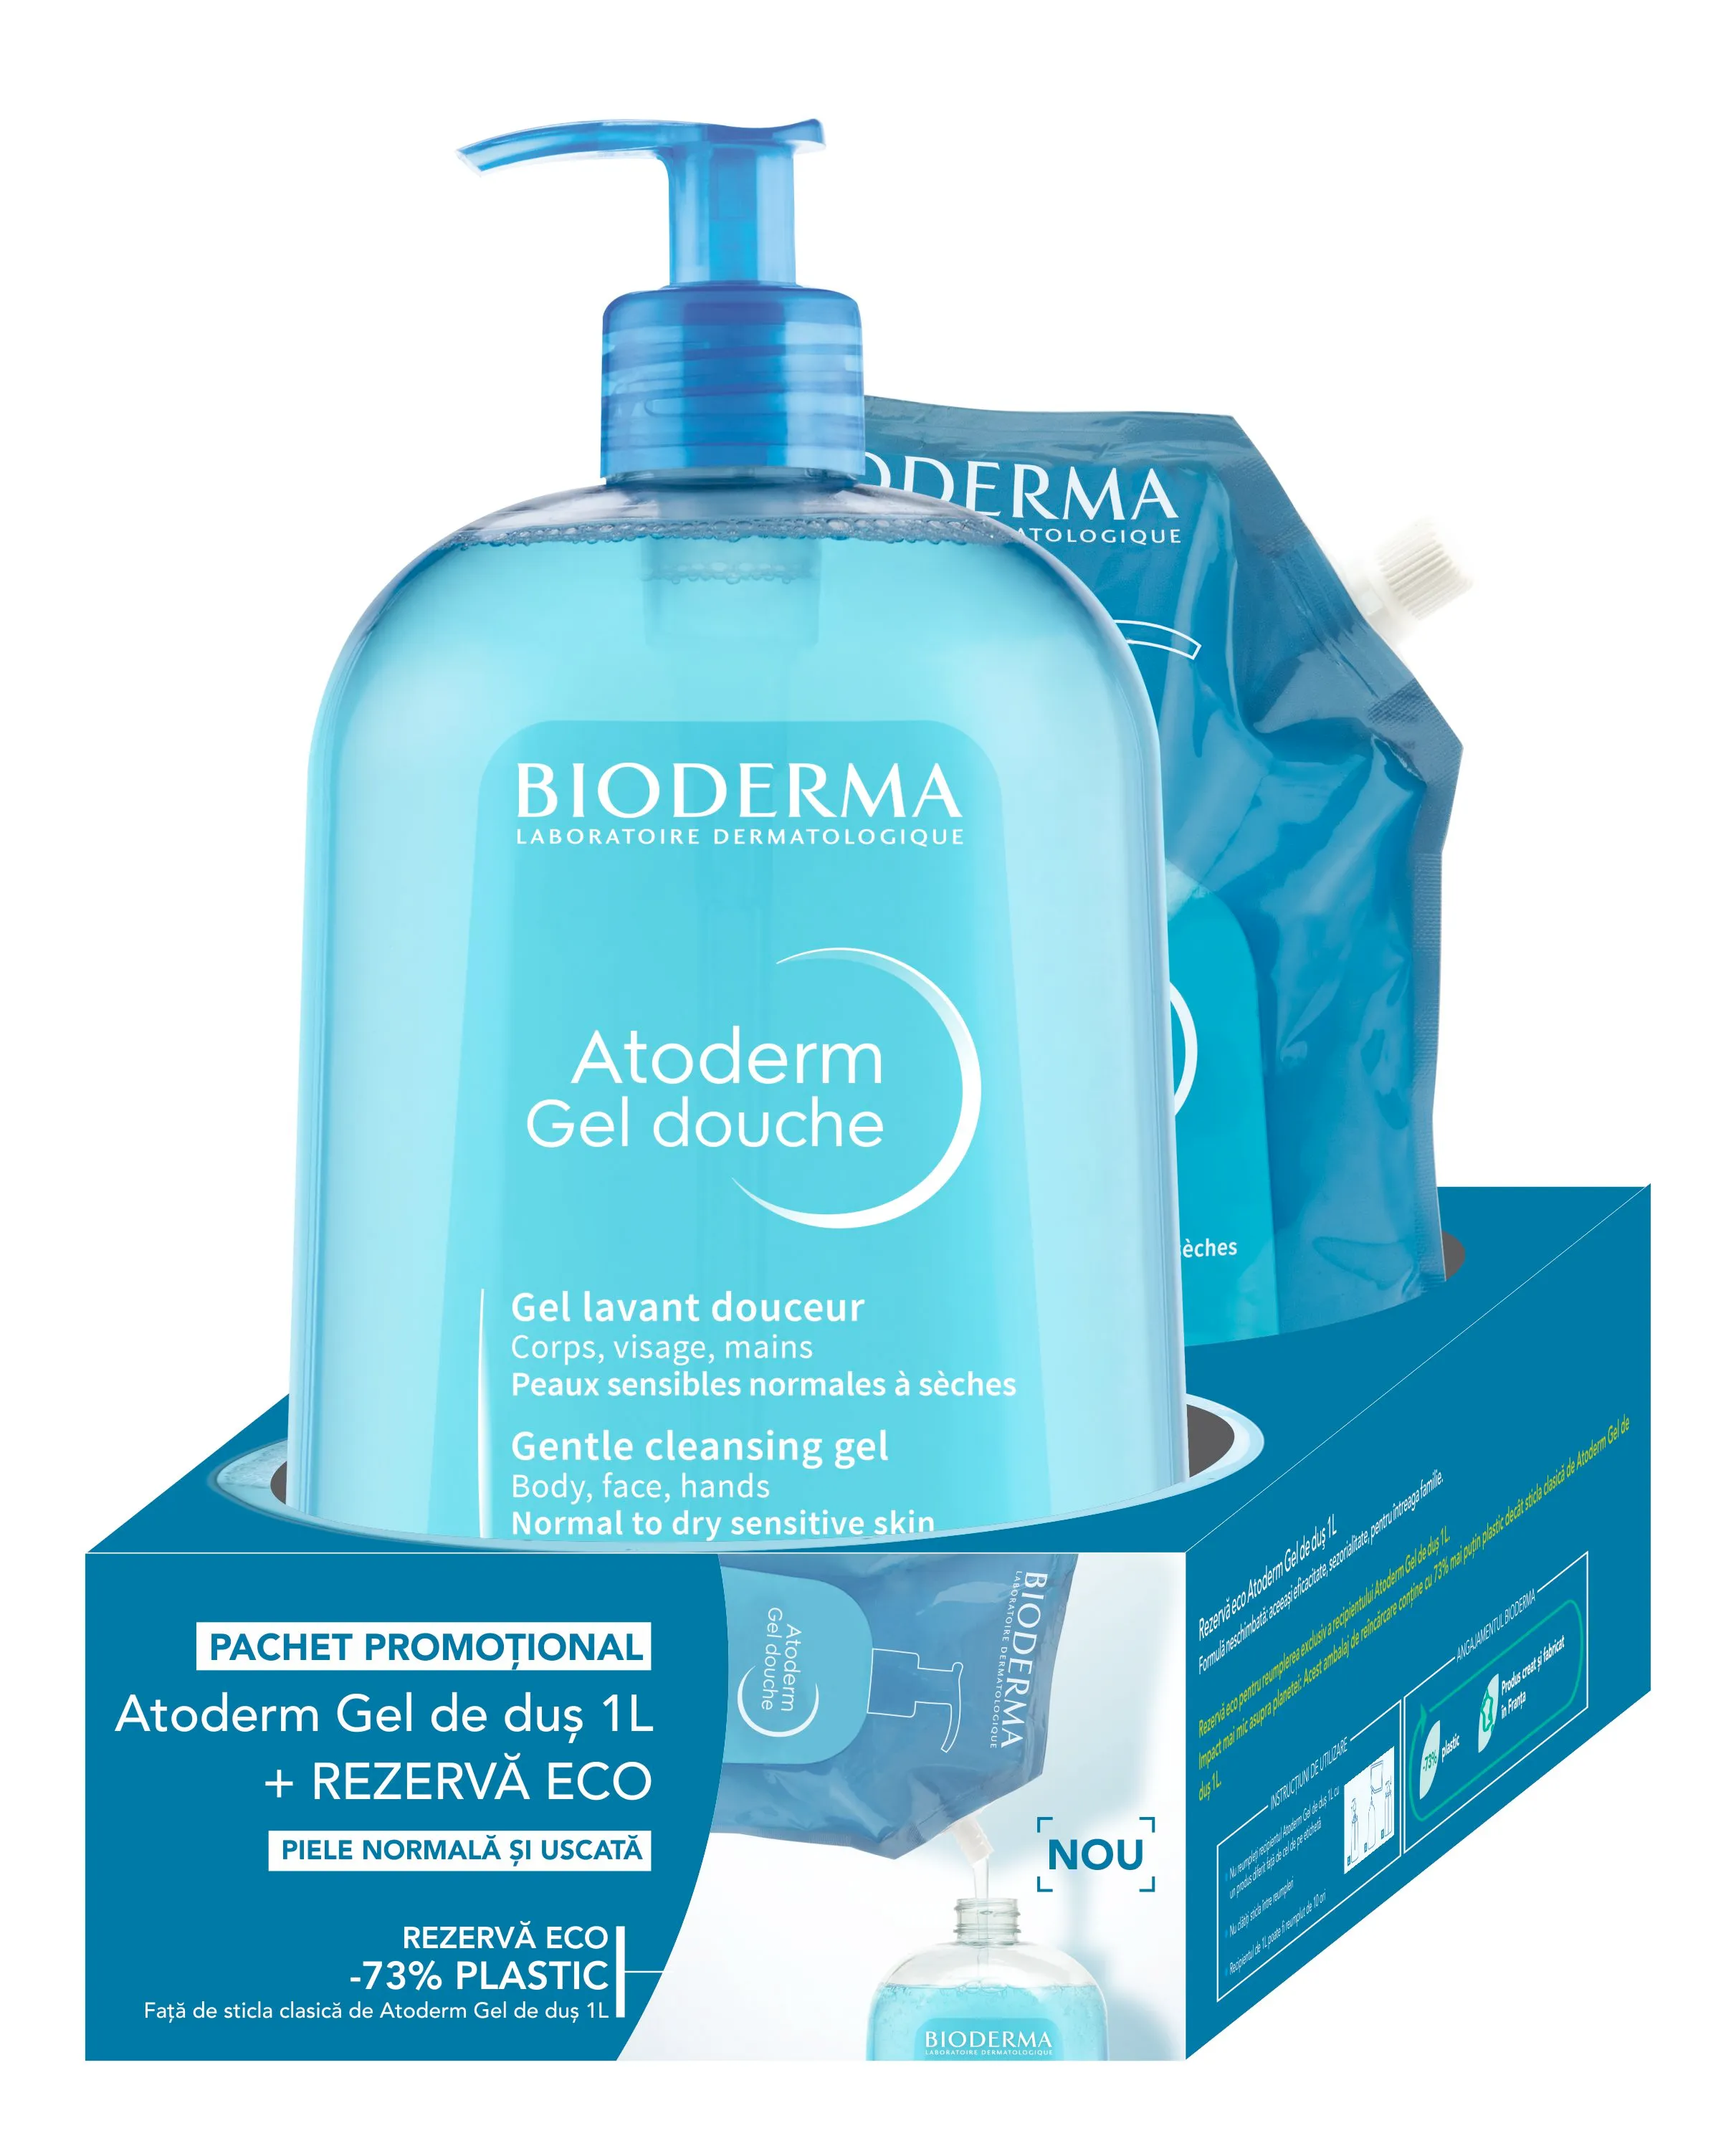 Gel de dus Atoderm + Rezerva eco gel de dus Atoderm Pachet, 1000 ml + 1000 ml, Bioderma 